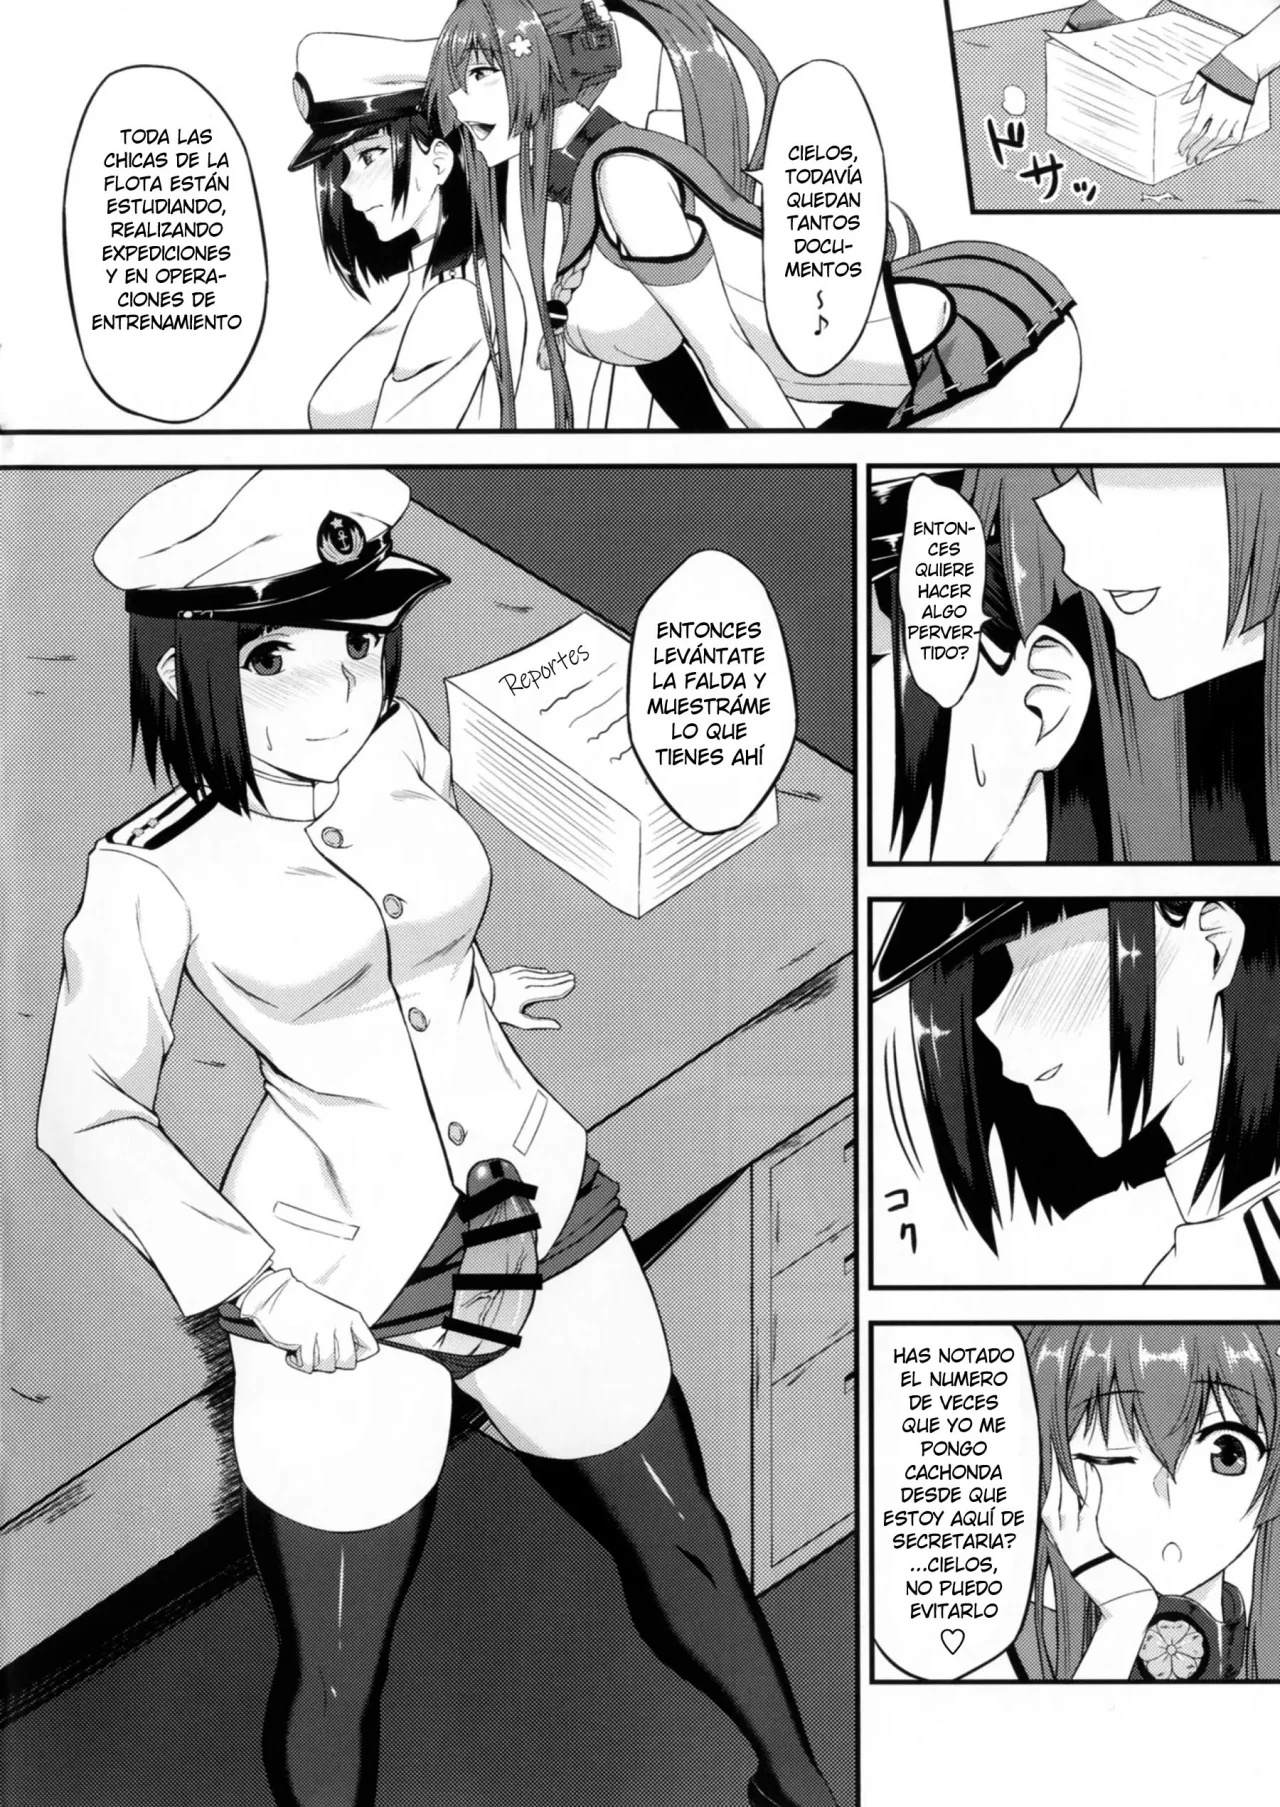 Yamato y la Almirante Futanari &#91;KanColle&#93; - 2